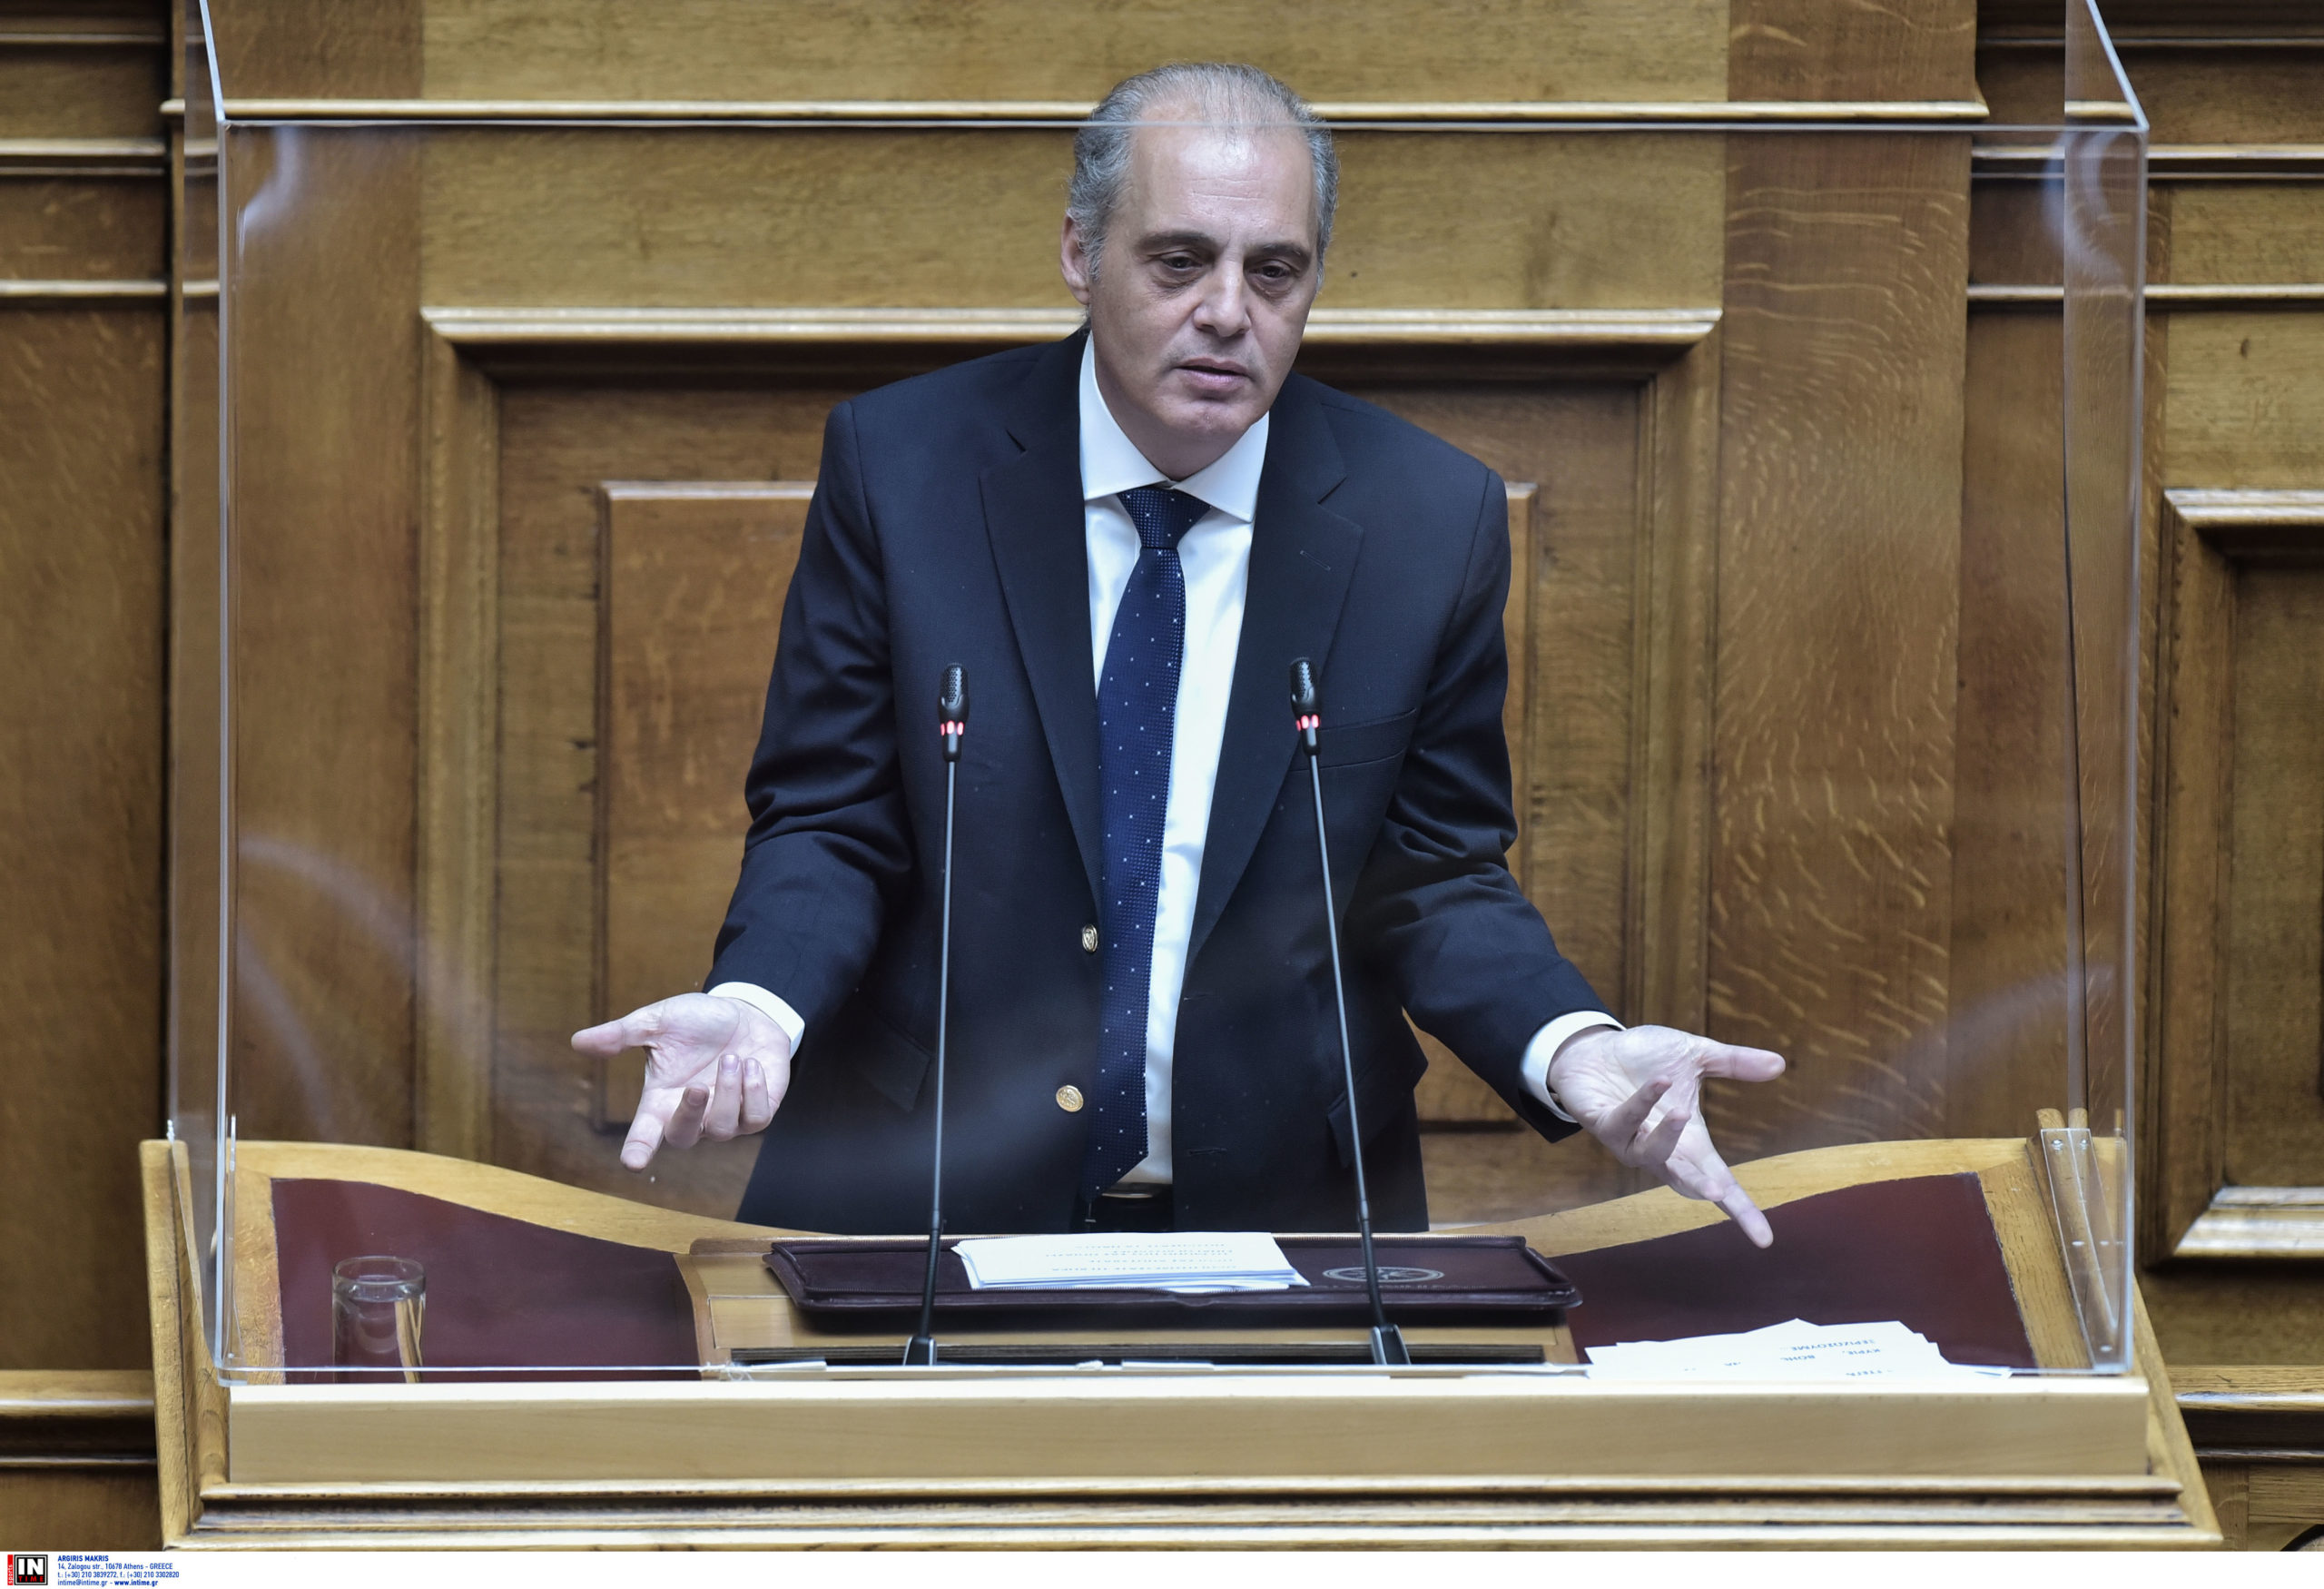 Βελόπουλος: Ορισμός της προεκλογικής εξαπάτησης οι δηλώσεις περί επιστροφής της ΕΥΔΑΠ και ΕΥΑΘ στο Δημόσιο